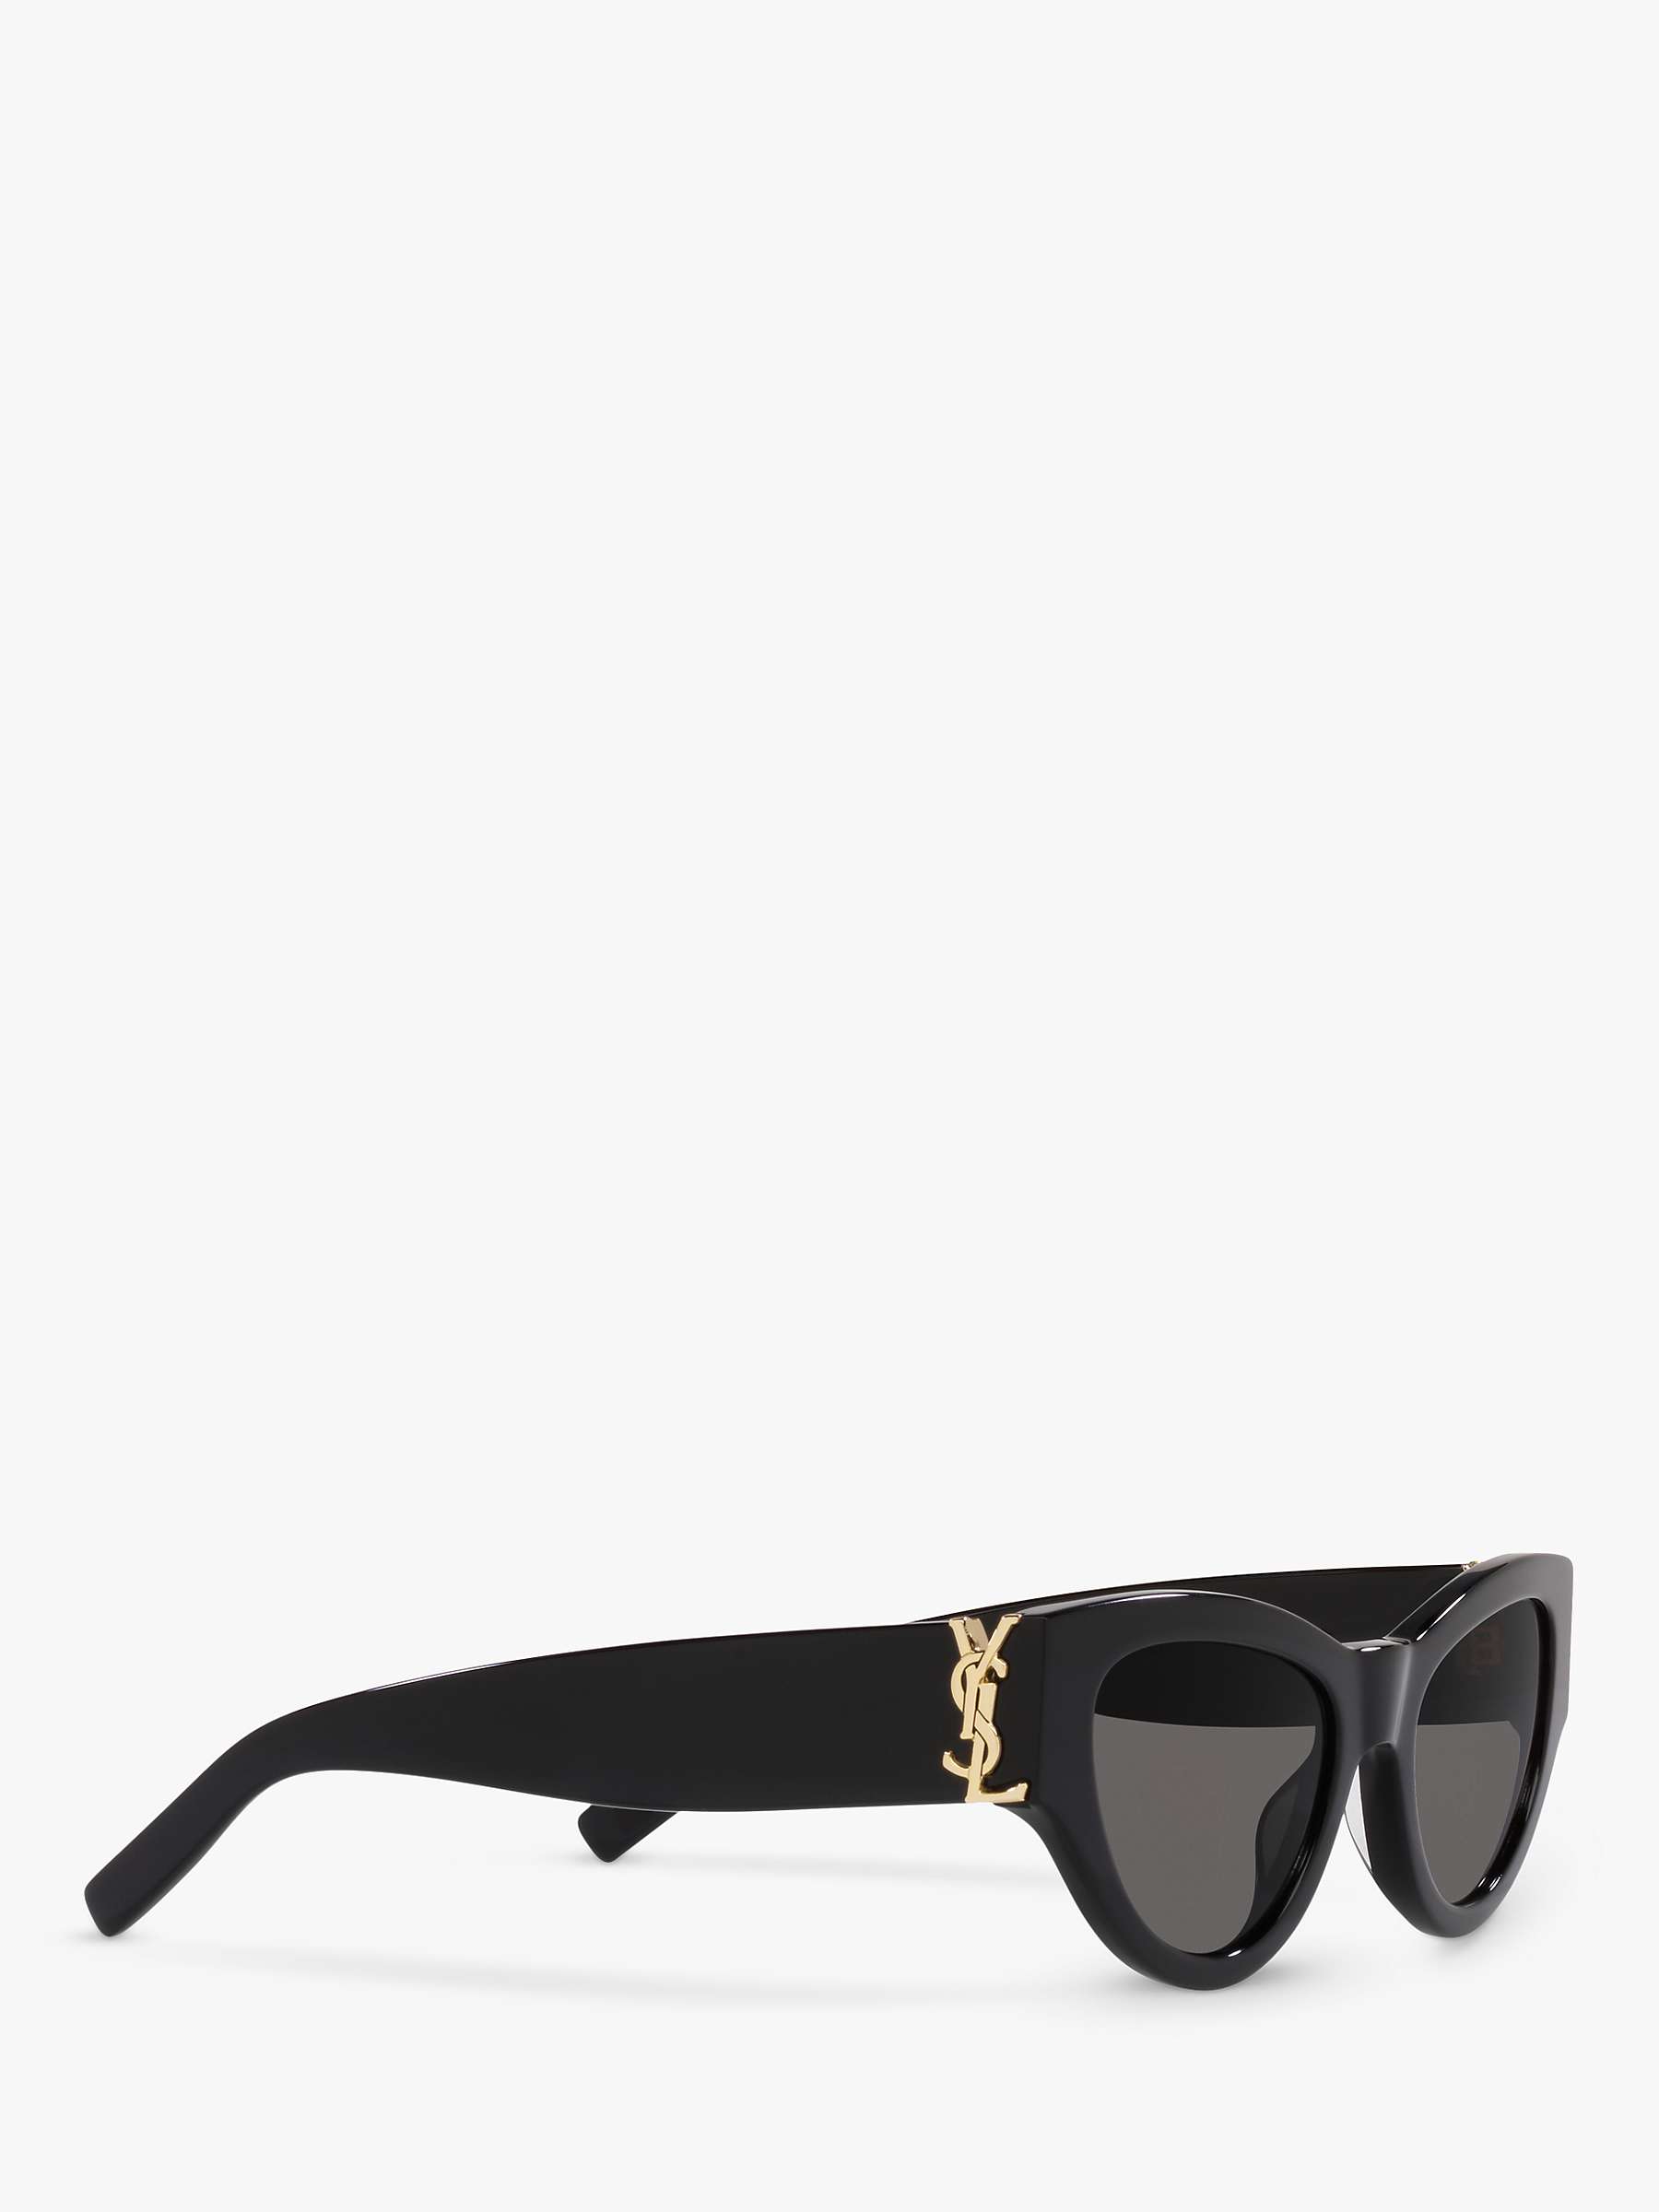 Buy Yves Saint Laurent SL M94 Women's Cat's Eye Sunglasses, Black/Grey Online at johnlewis.com